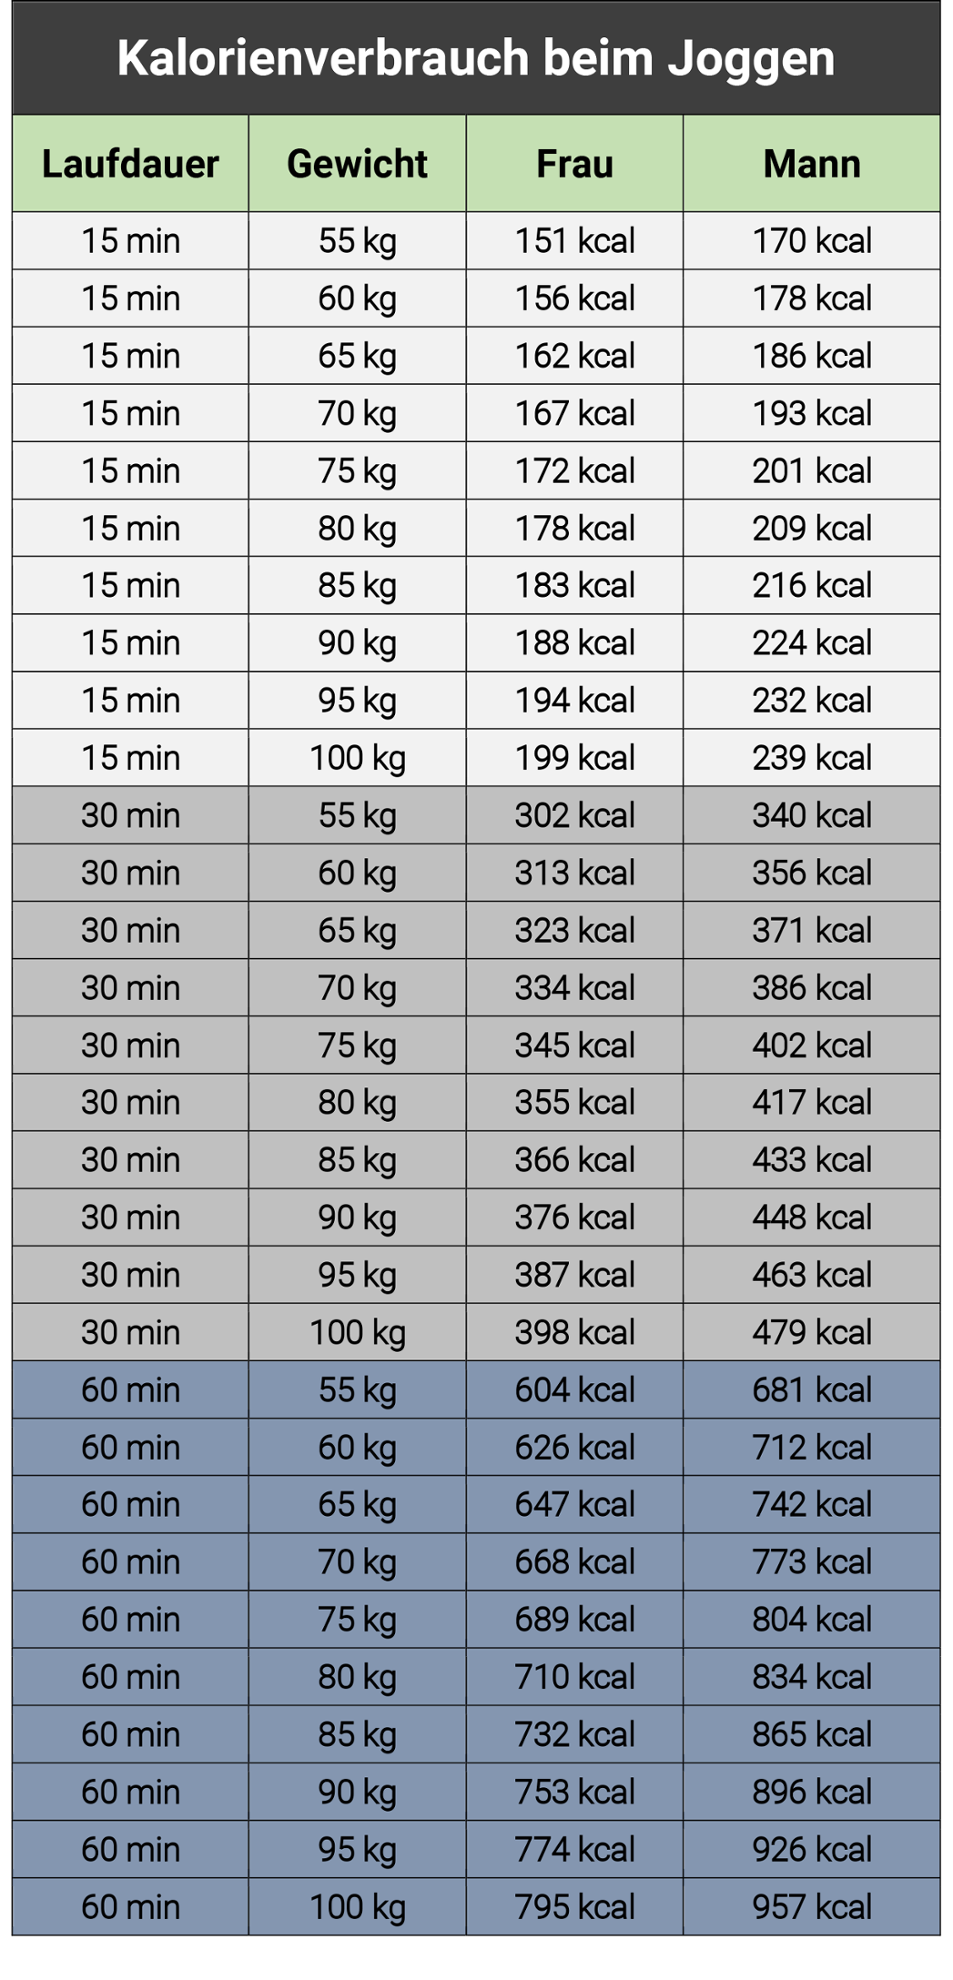 Tabelle mit Kalorienverbrauch beim Joggen